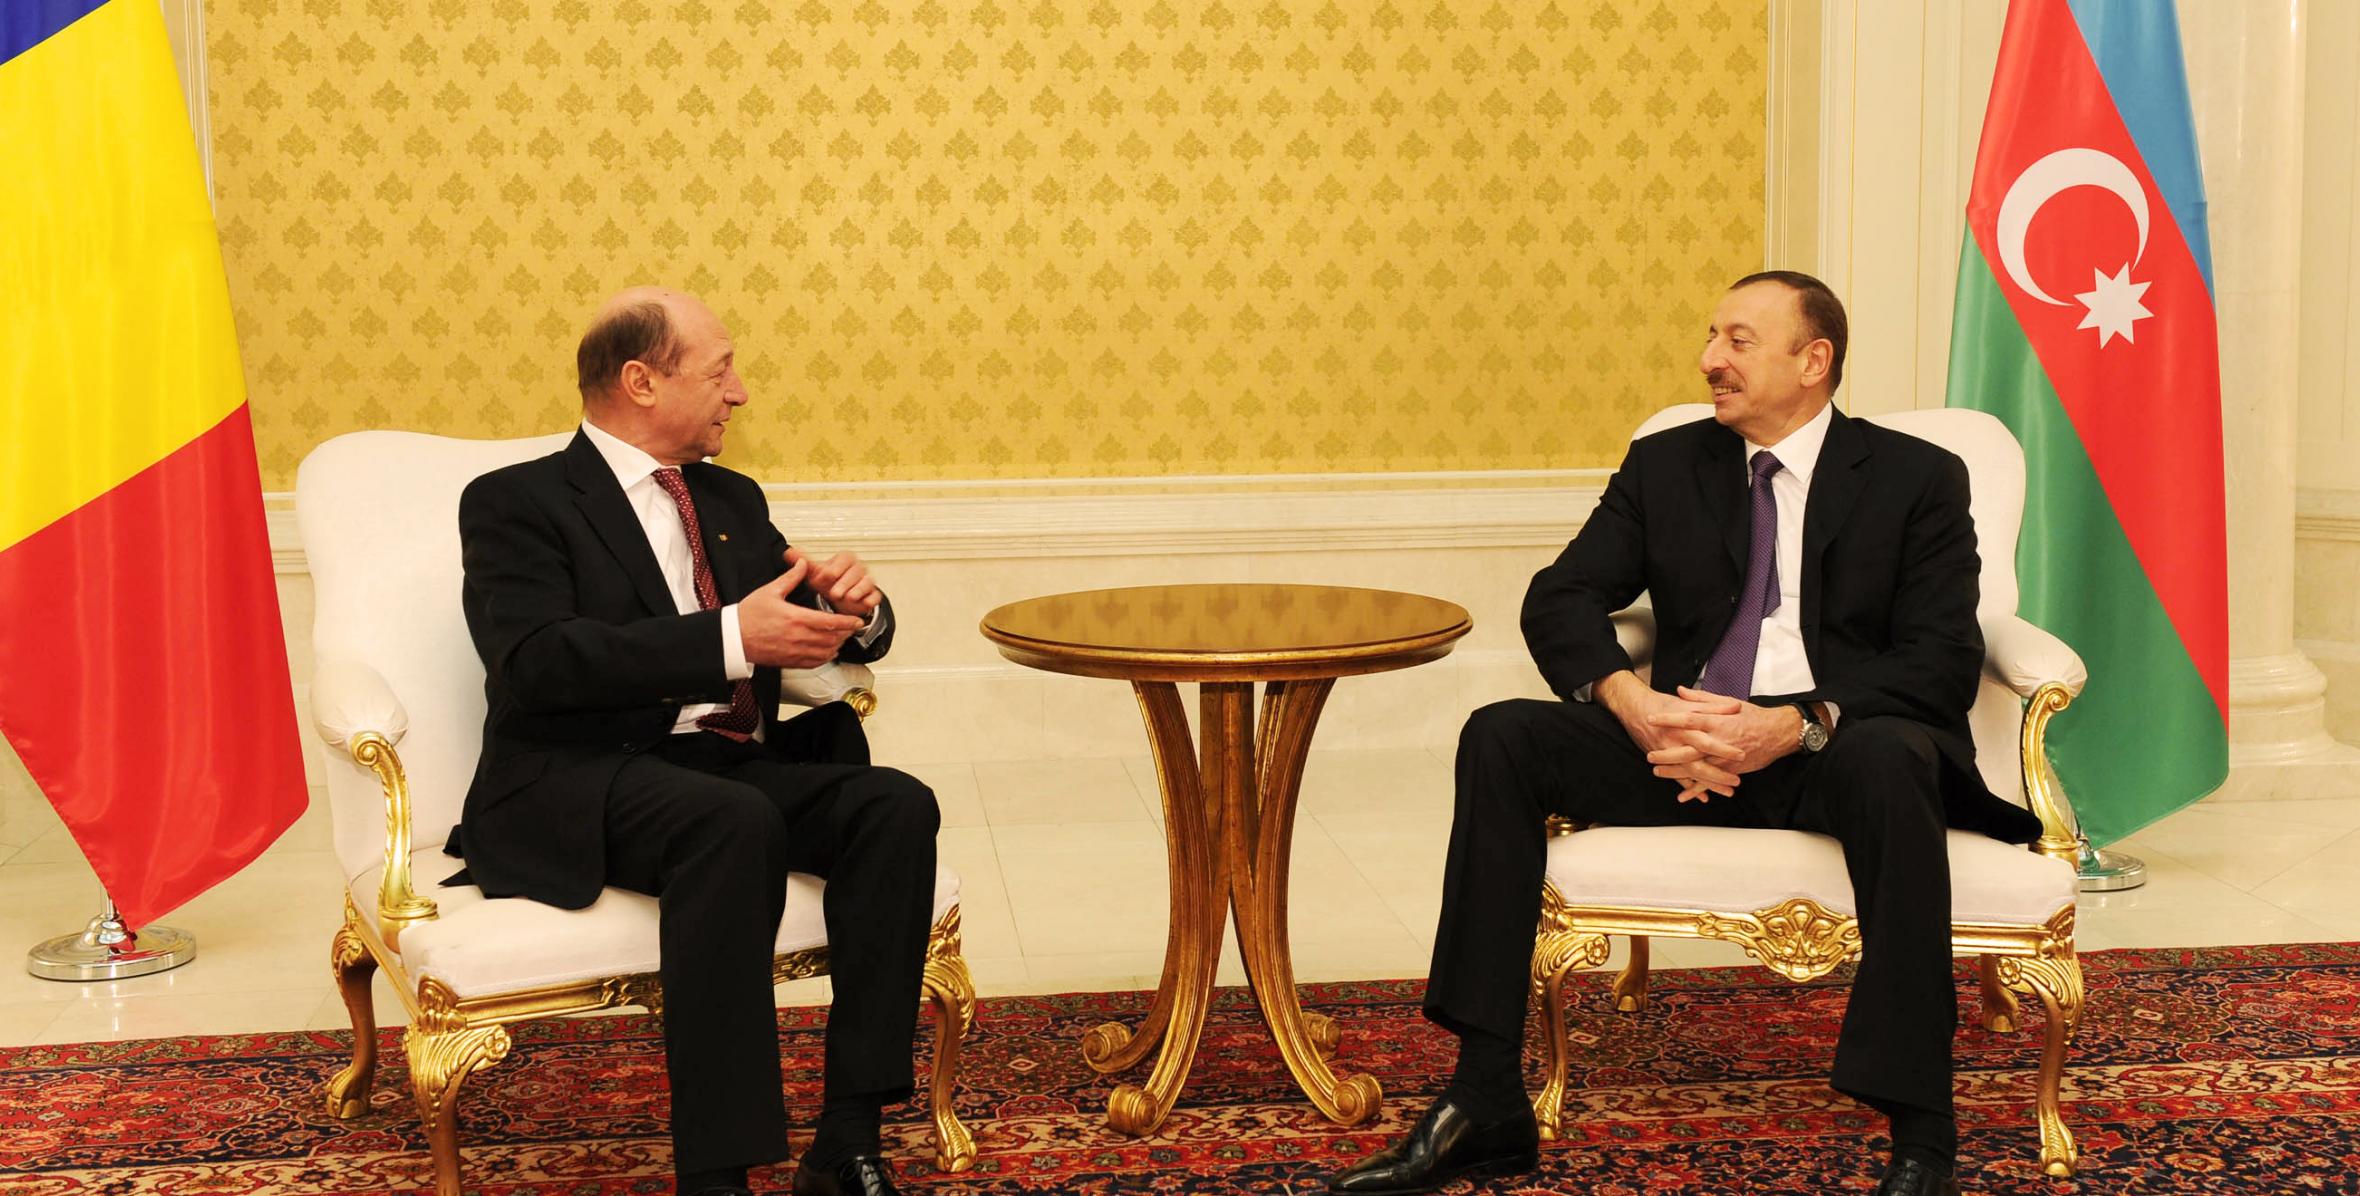 Состоялась встреча Ильхама Алиева и Президента Румынии Траяна Бэсеску один на один